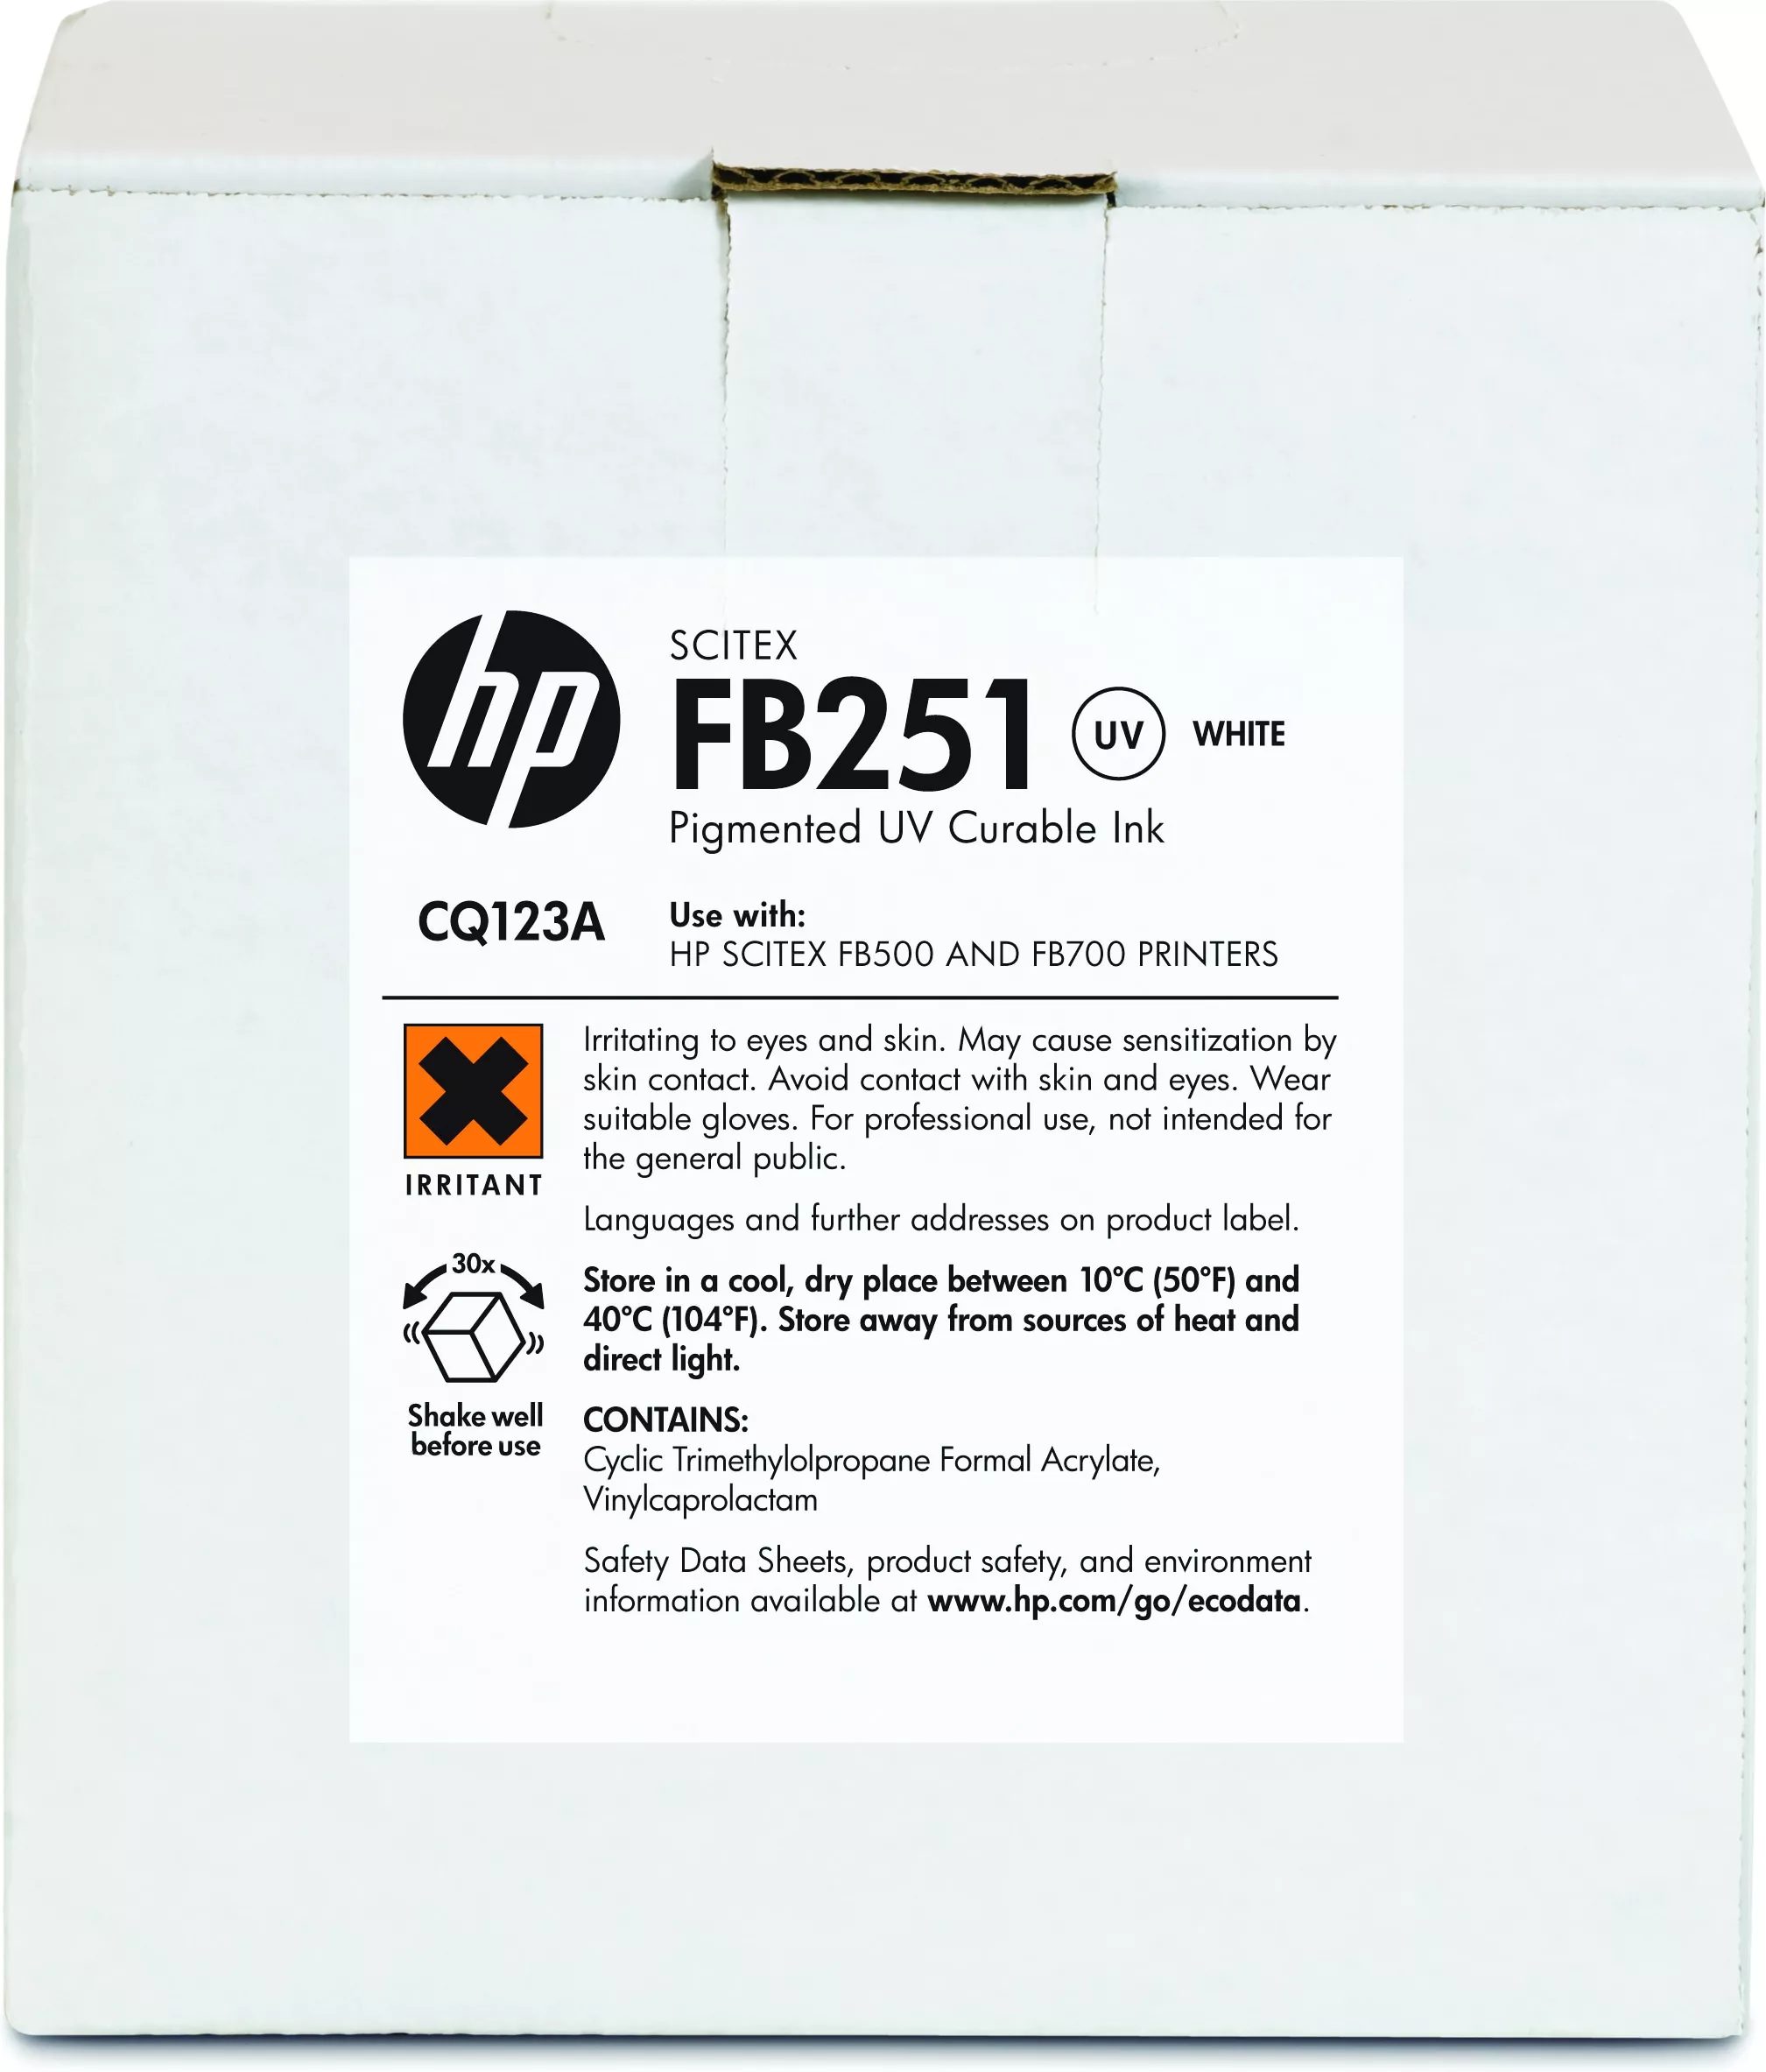 Vente HP FB251 encre Scitex blanche 2 litres HP au meilleur prix - visuel 2